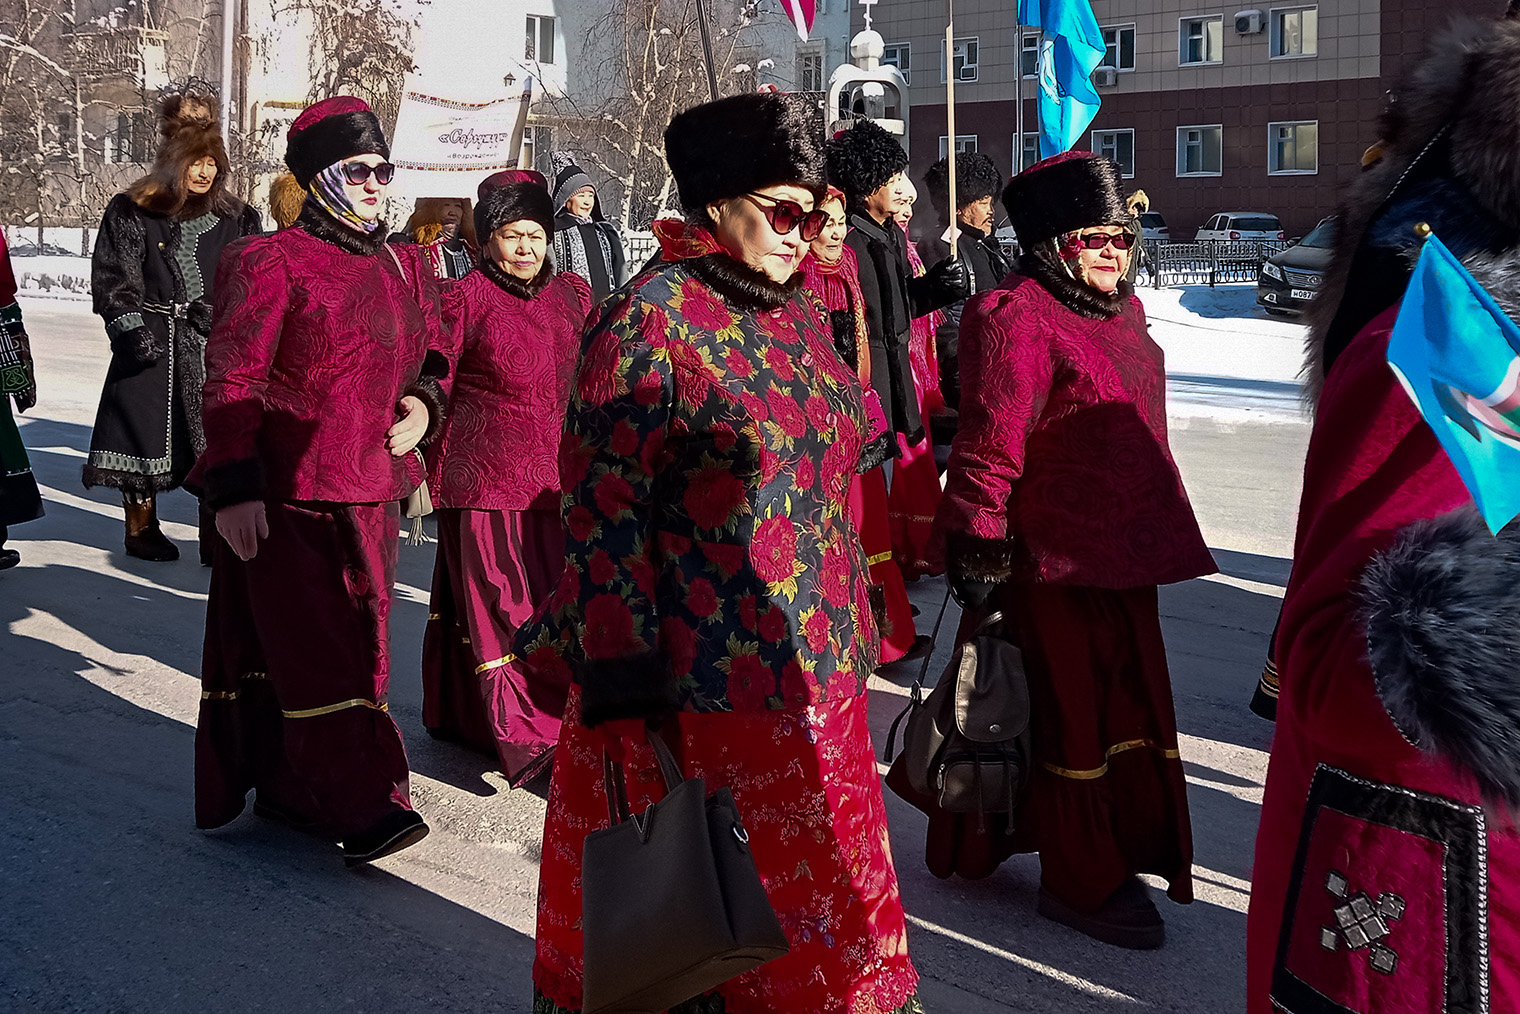 Шествие в честь Дня народного мастера проходит от Дома дружбы народов до площади Орджоникидзе и заканчивается массовым осуохаем